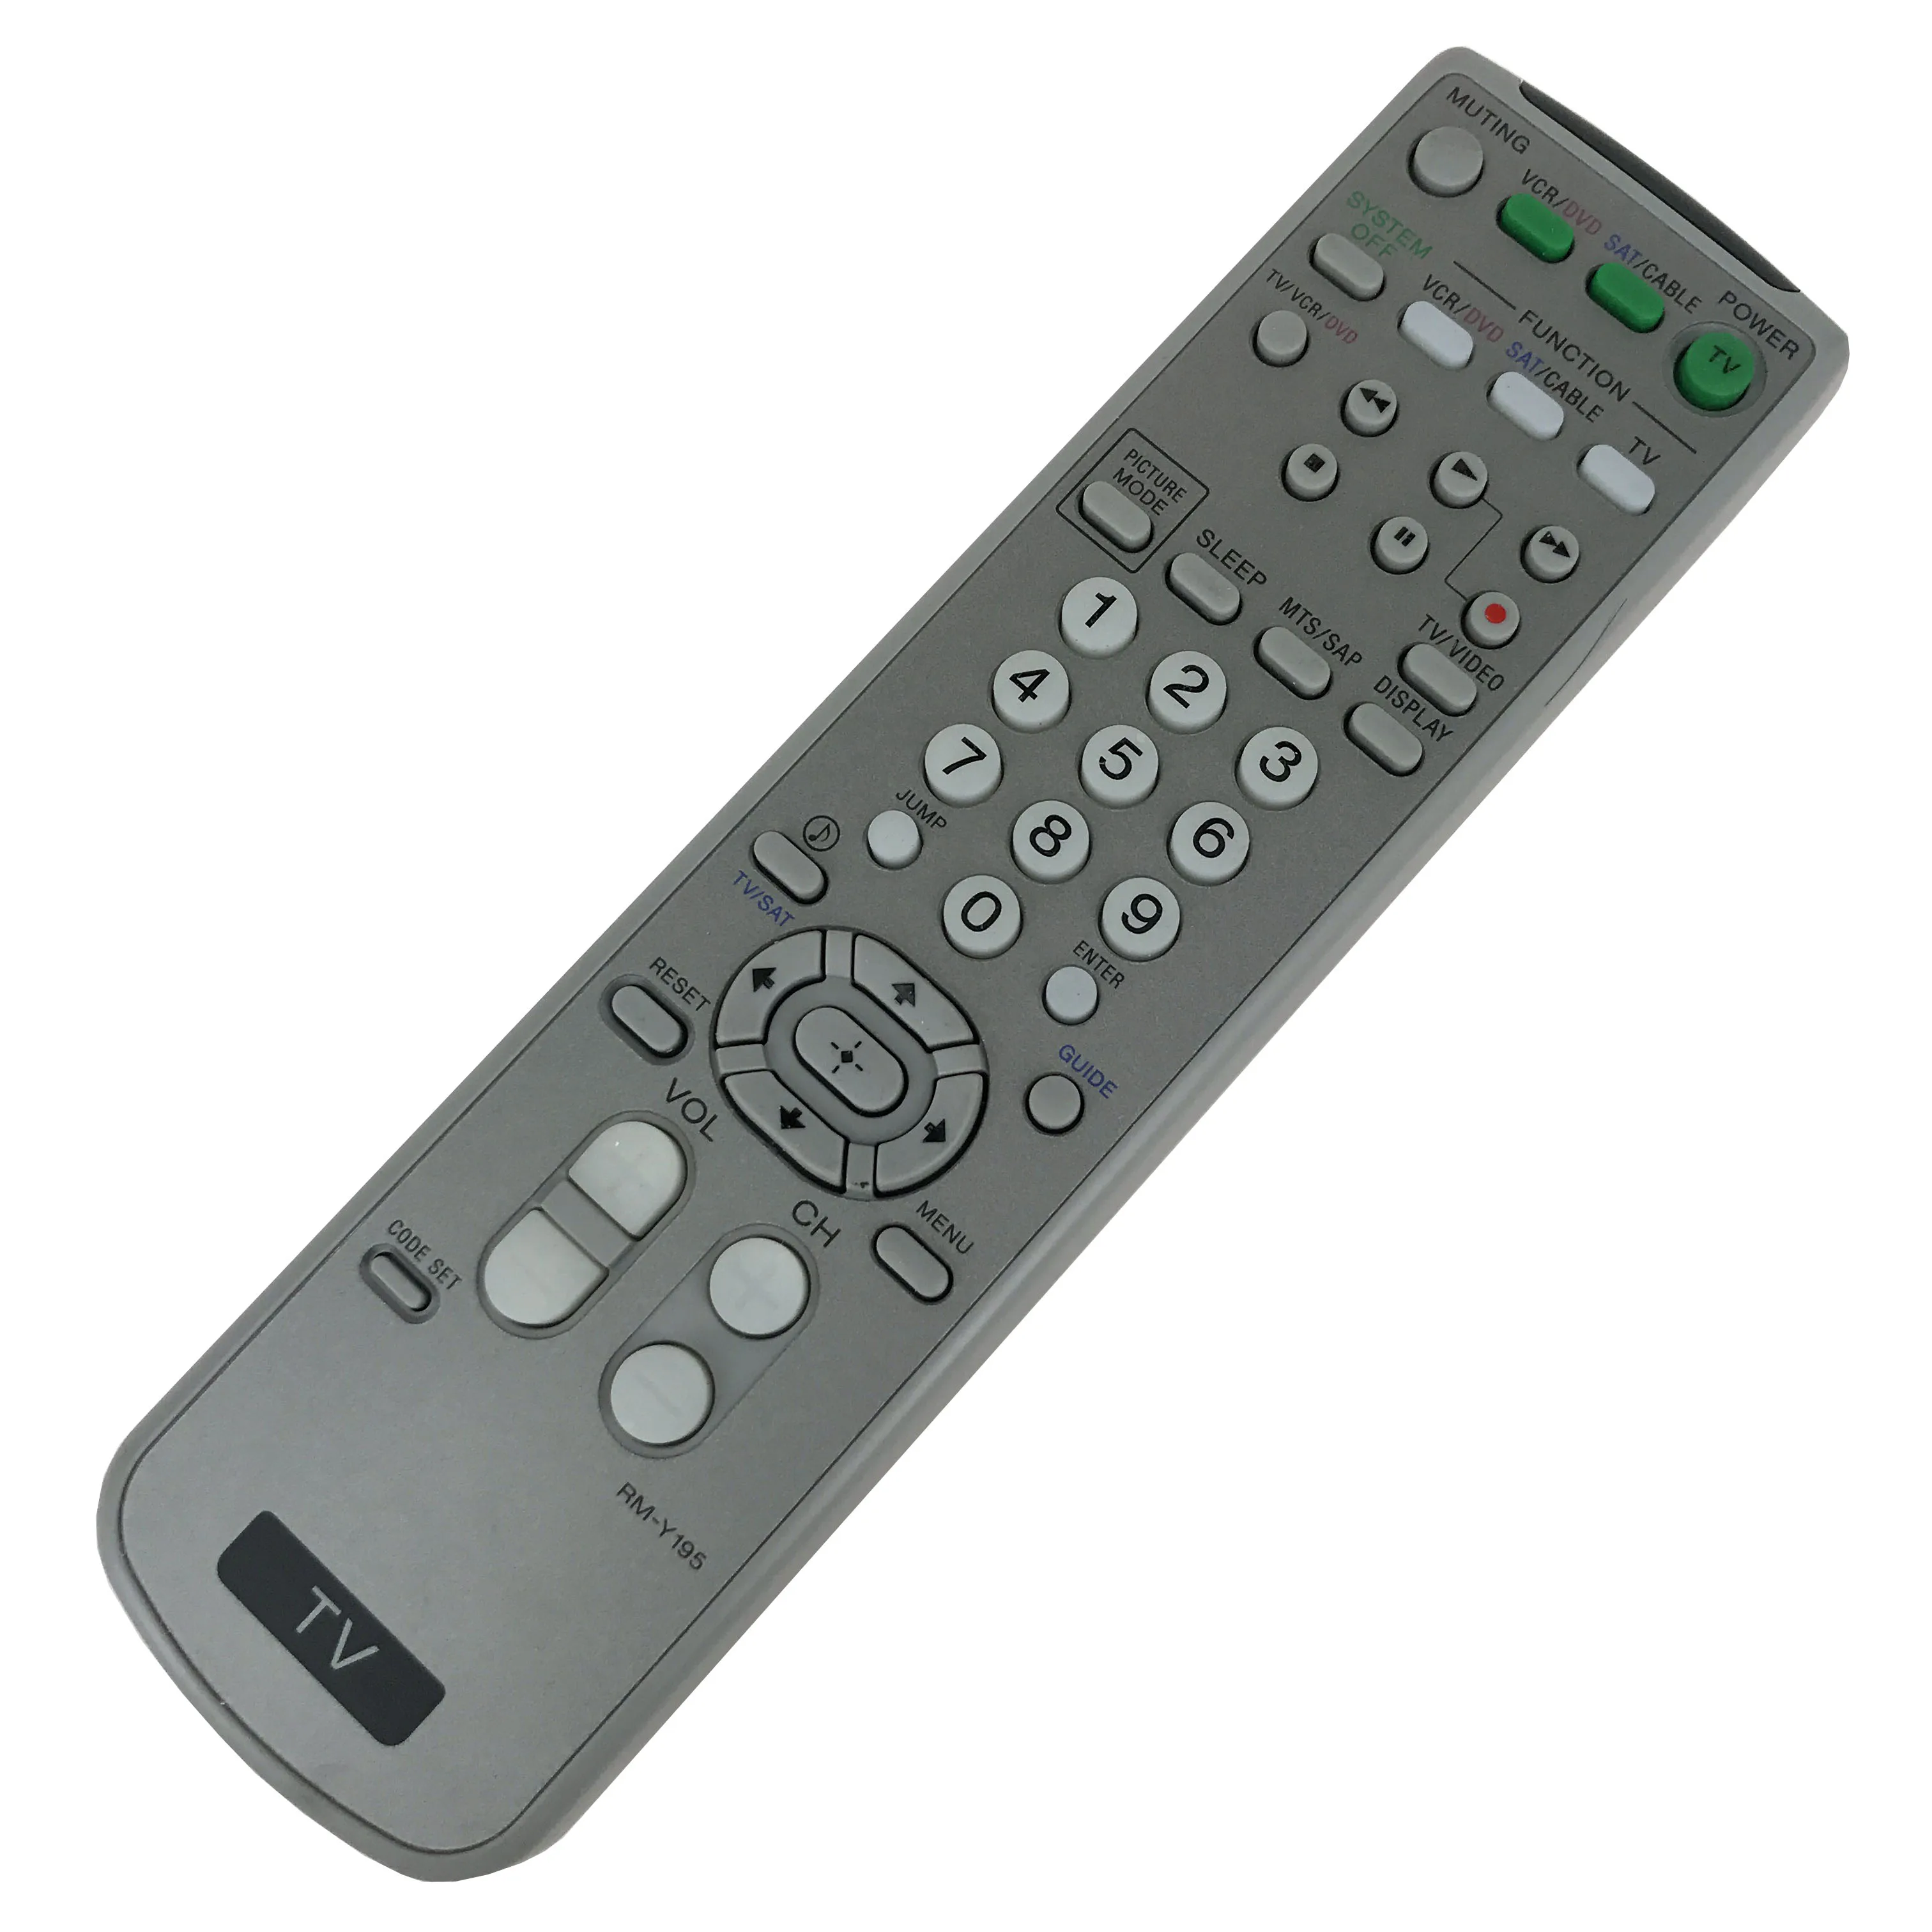 NEW Original Remote Control RM-Y195 For SONY TV VCR Fit for DVD KV-20FV300 KV-27FA310 KV-32FS320 KV-29FS120